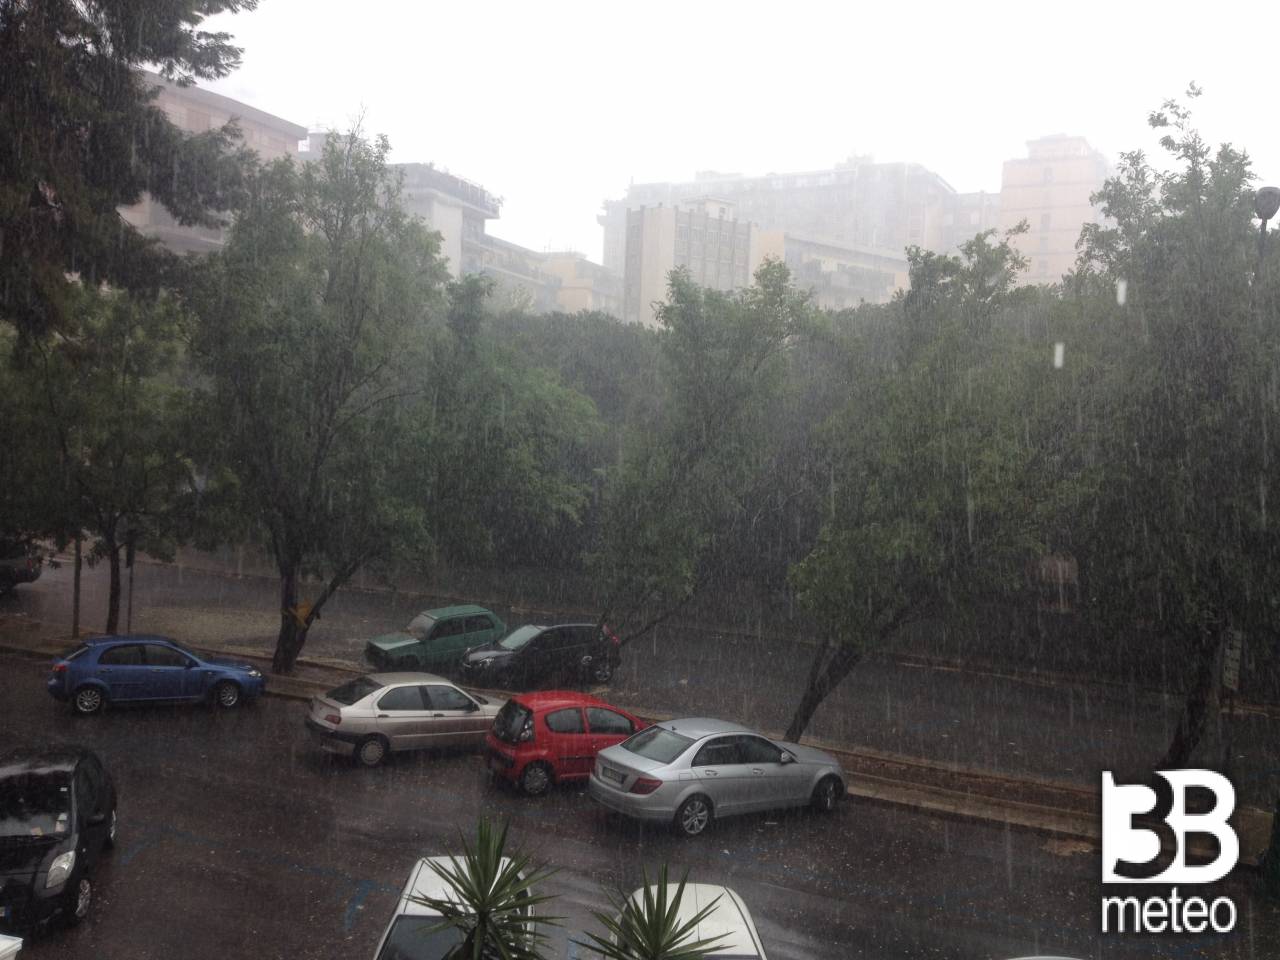 Meteo La Spezia: molte nubi mercoledì, piogge giovedì, temporali ... - 3bmeteo